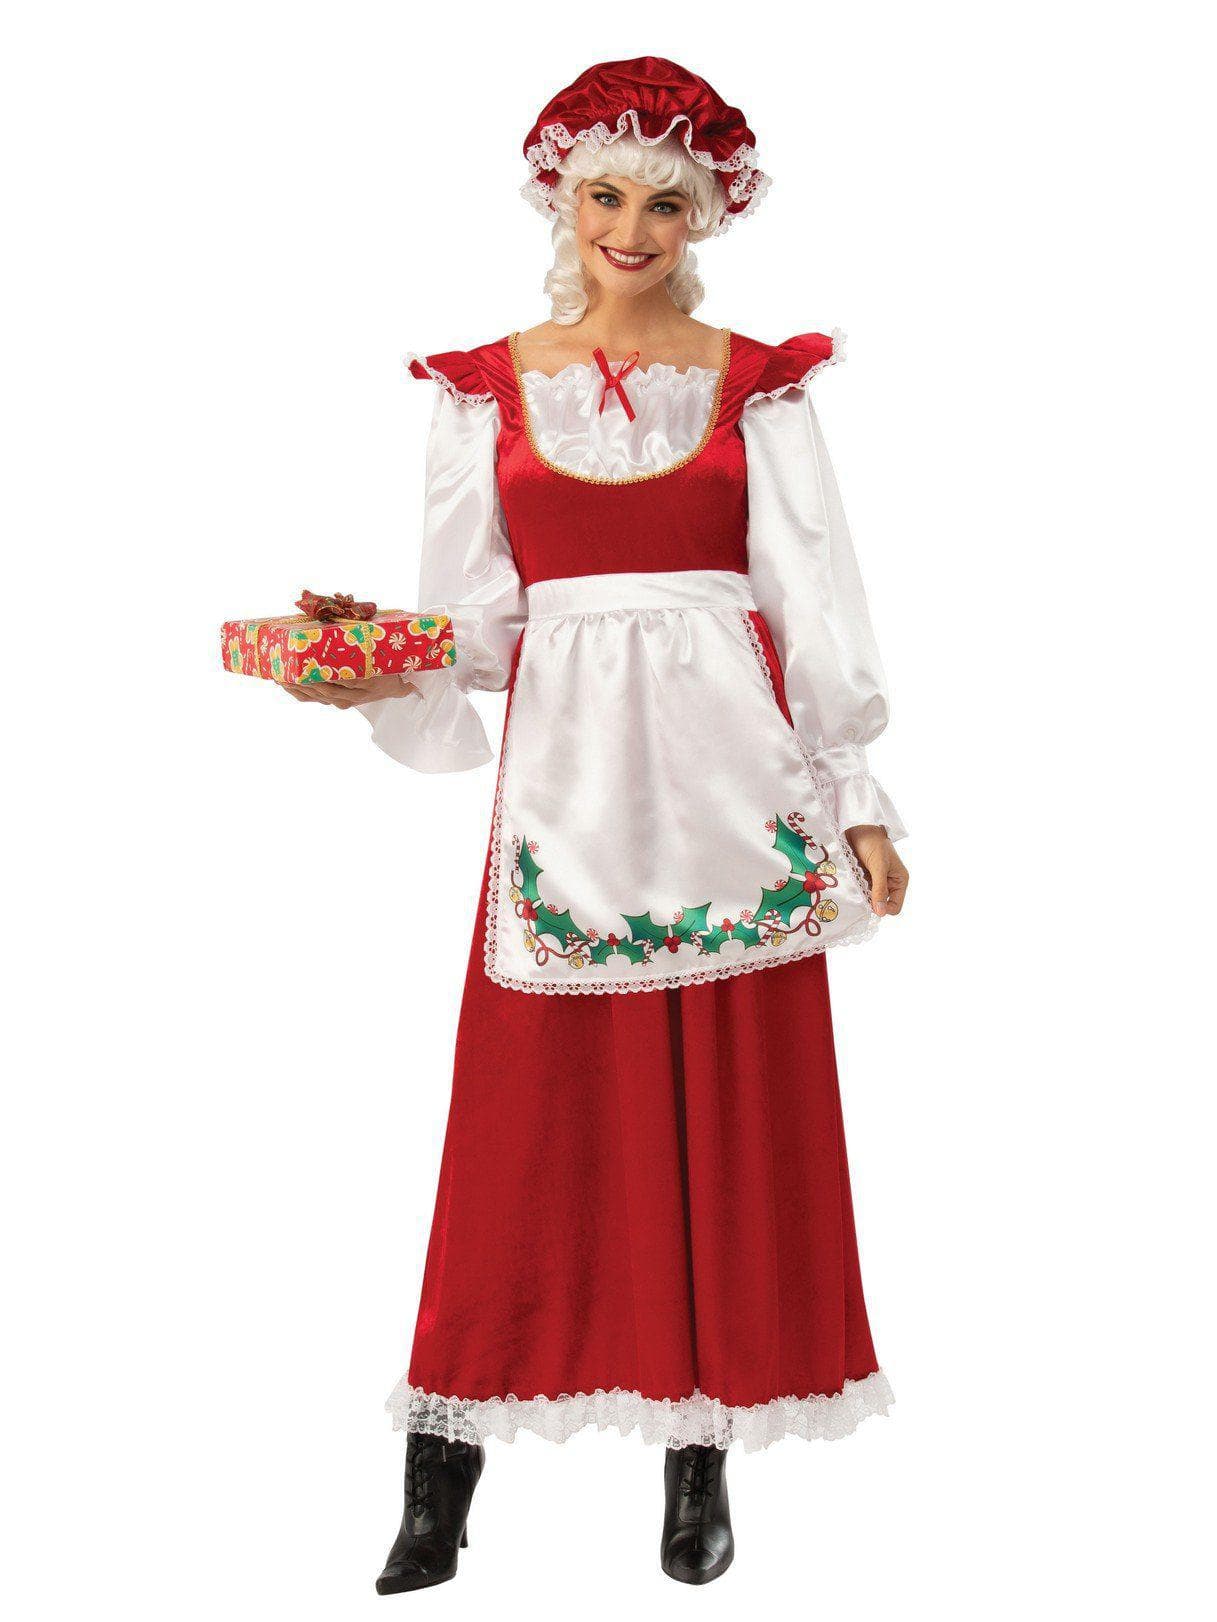 Adult Ms. Santa Claus Costume - costumes.com